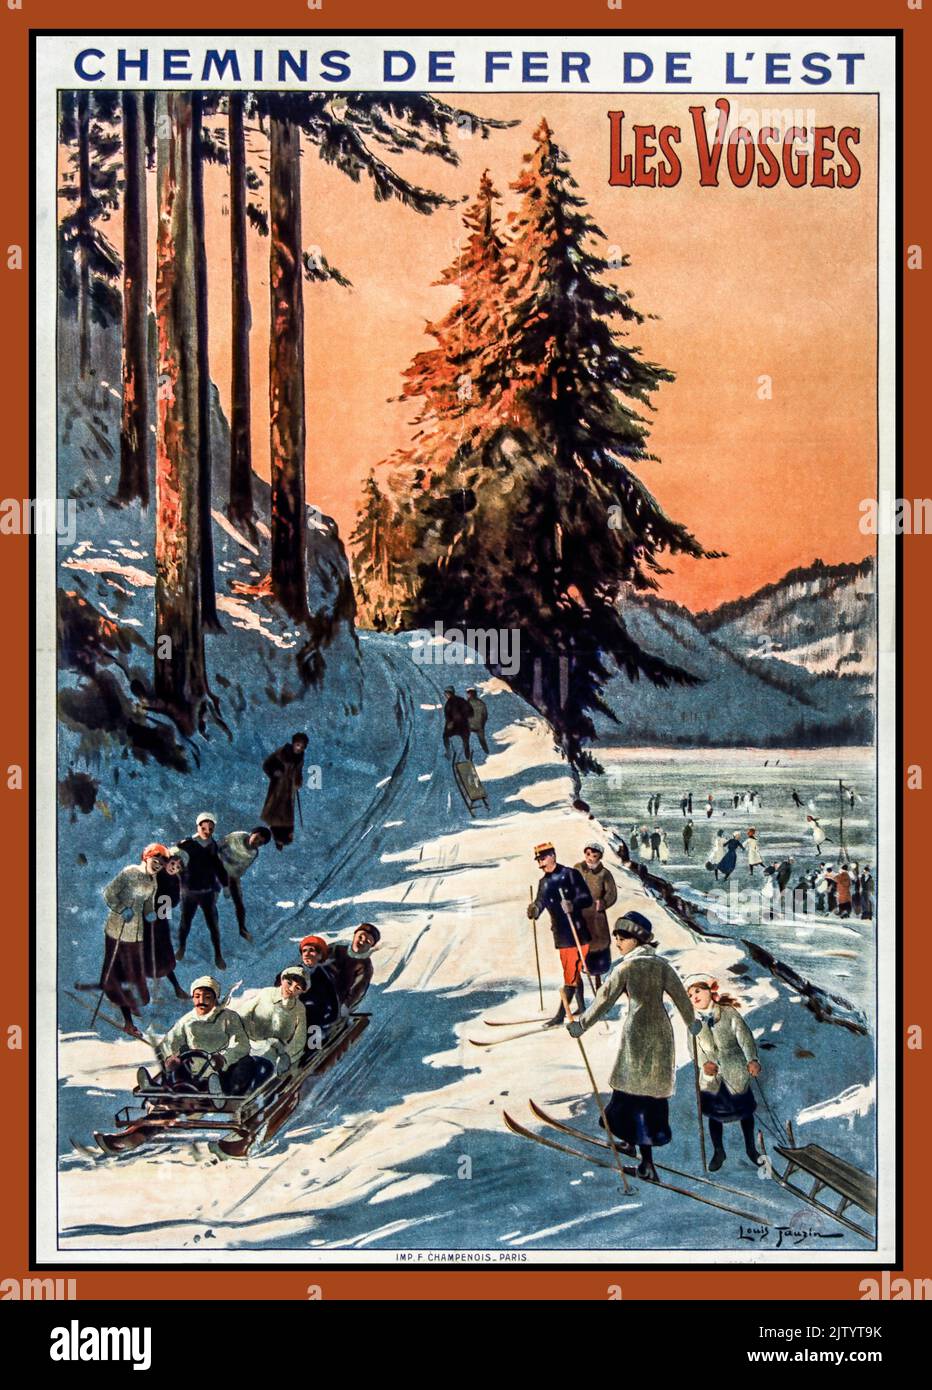 Vintage French Railways Travel Poster Sports d'hiver détente en famille ski chemins de fer de l'est. Les Vosges, affiche VOSGES hiver neige France 1900s par l'artiste Louis Tauzin Banque D'Images